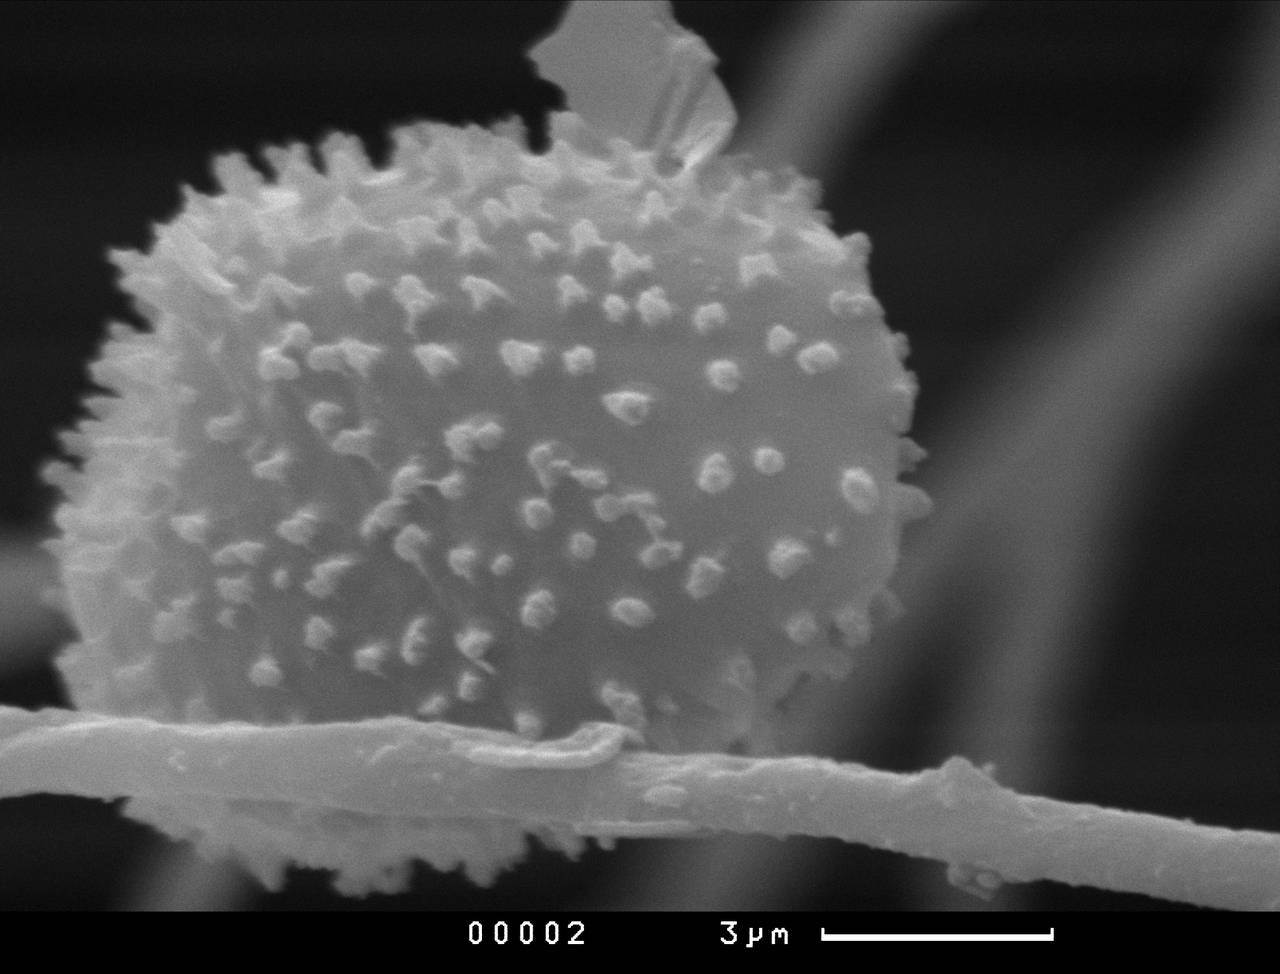 Lamprderma gulielmae внешний вид спорангия. Хорошо заметны углубления на поверхности перидия, СЭМ, Нелидовский, Tver Oblast (Russia)